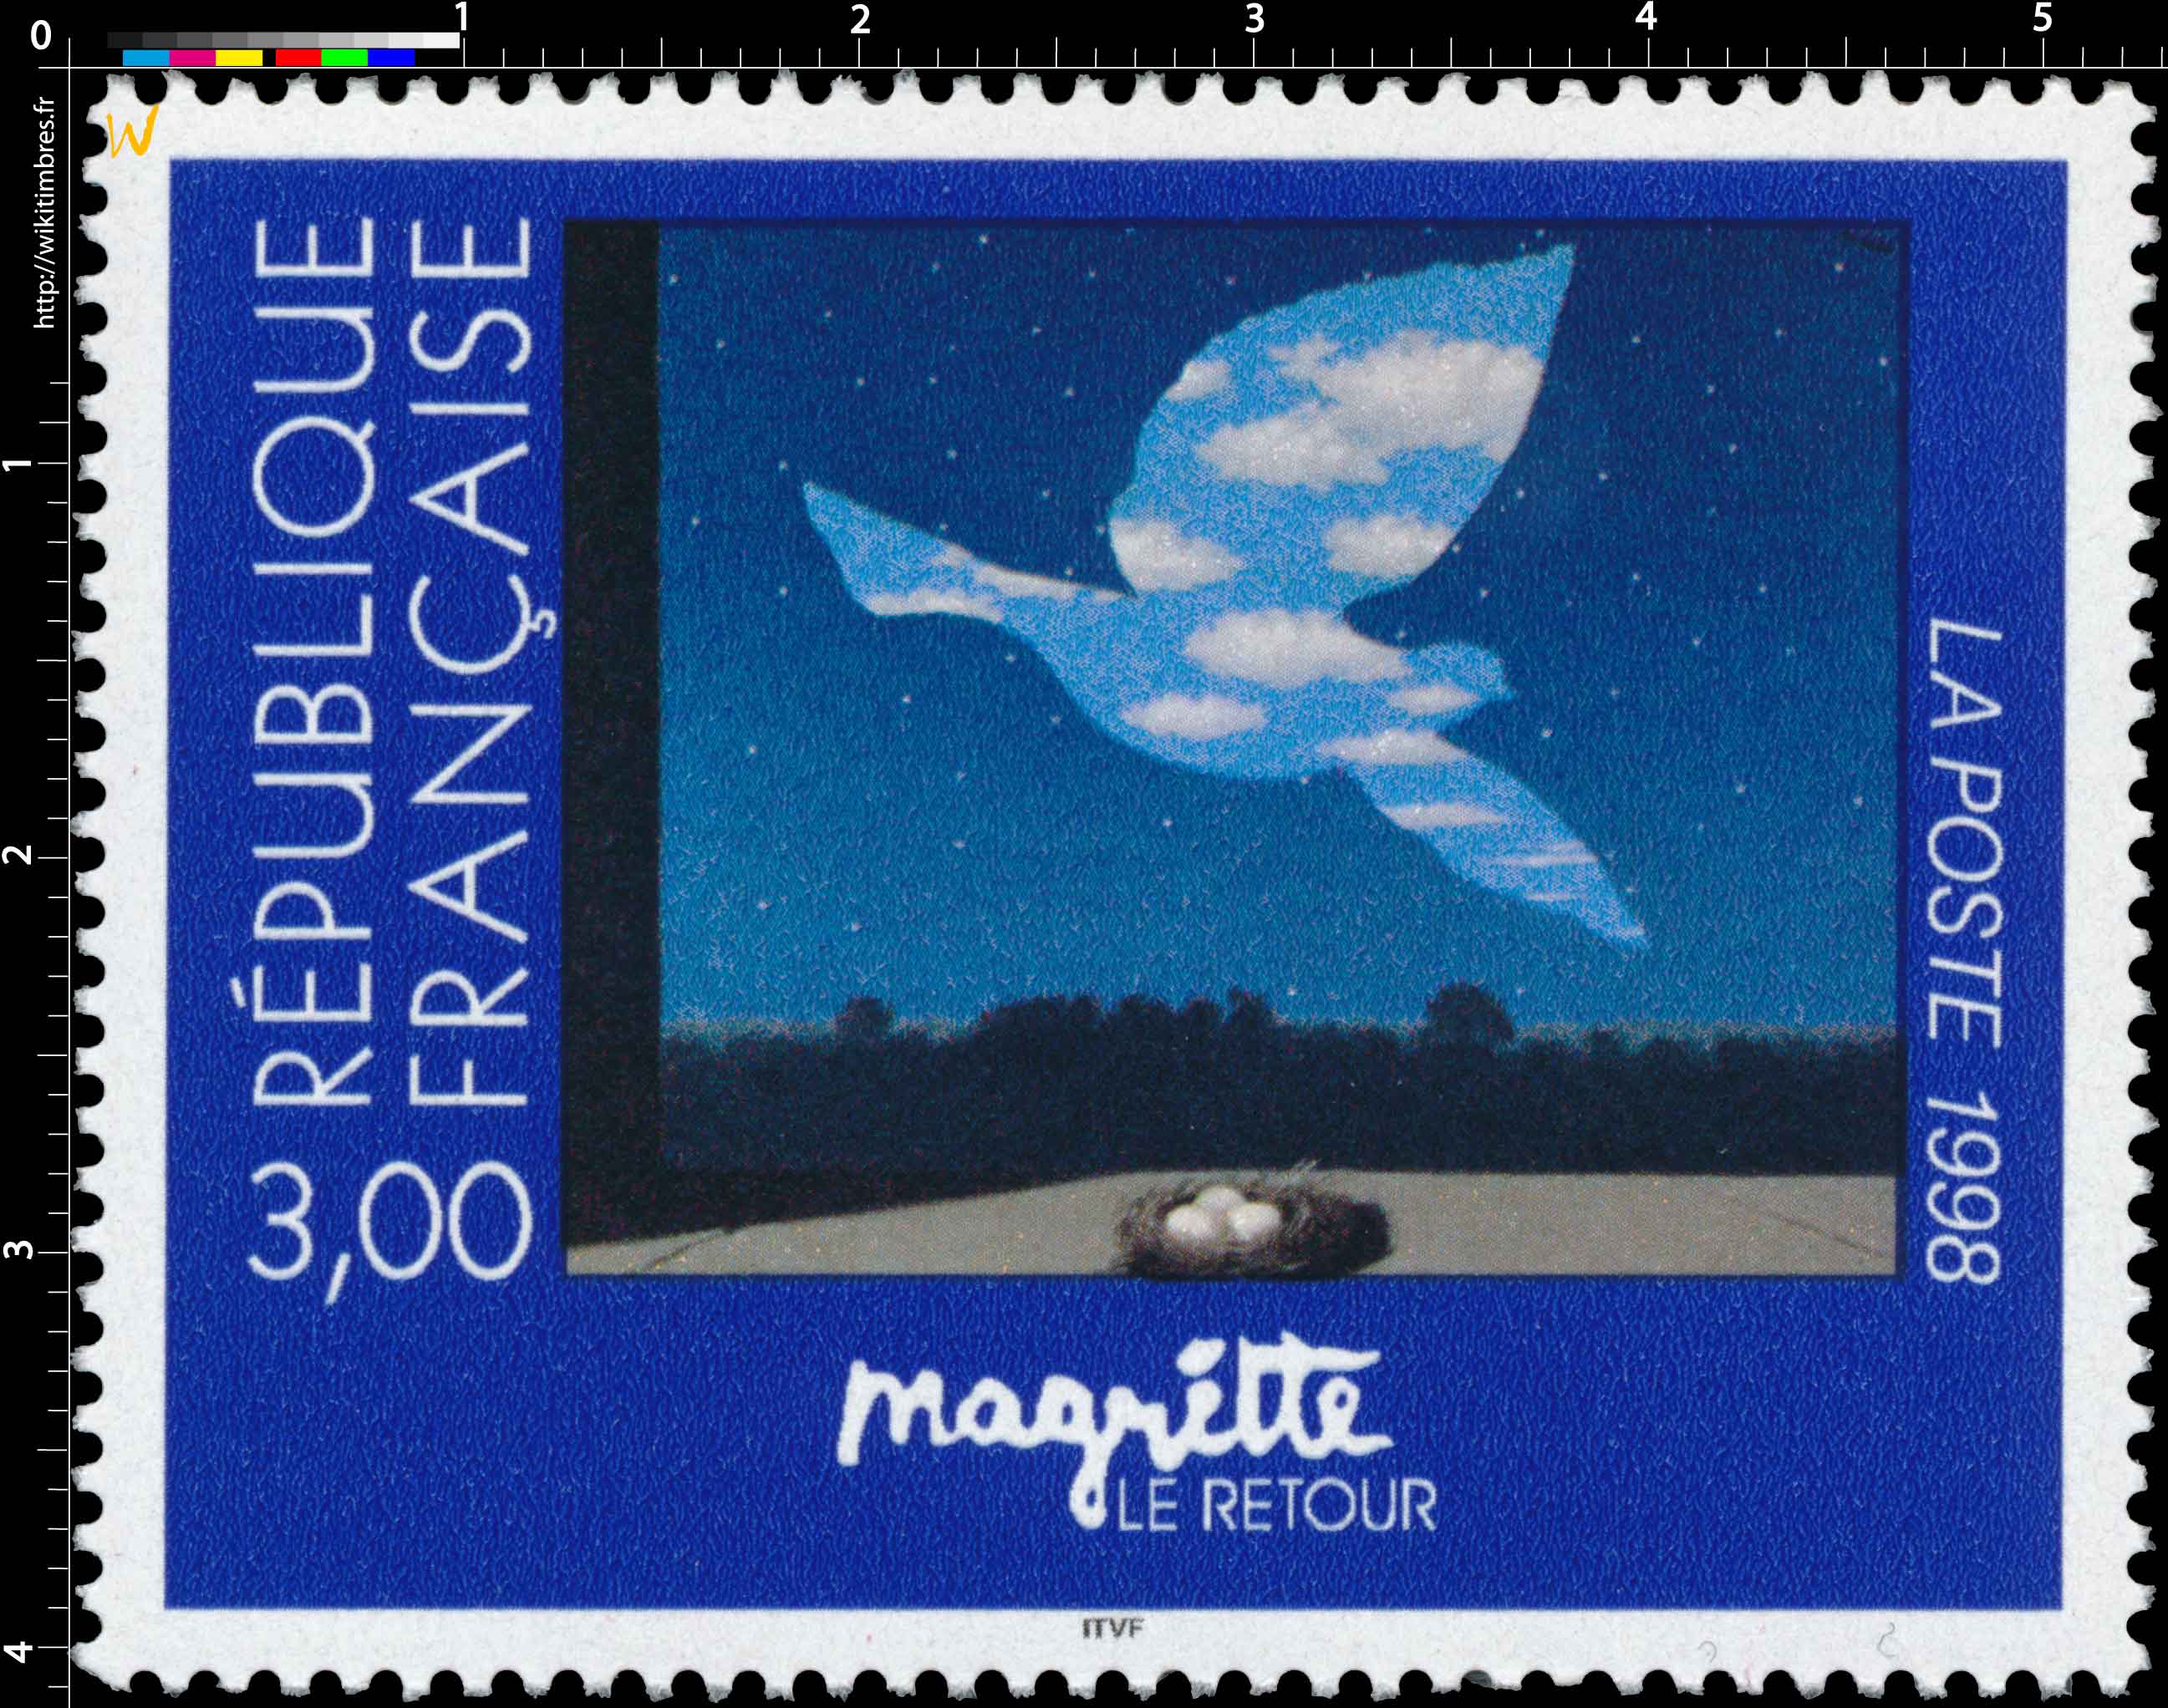 1998 Magritte LE RETOUR